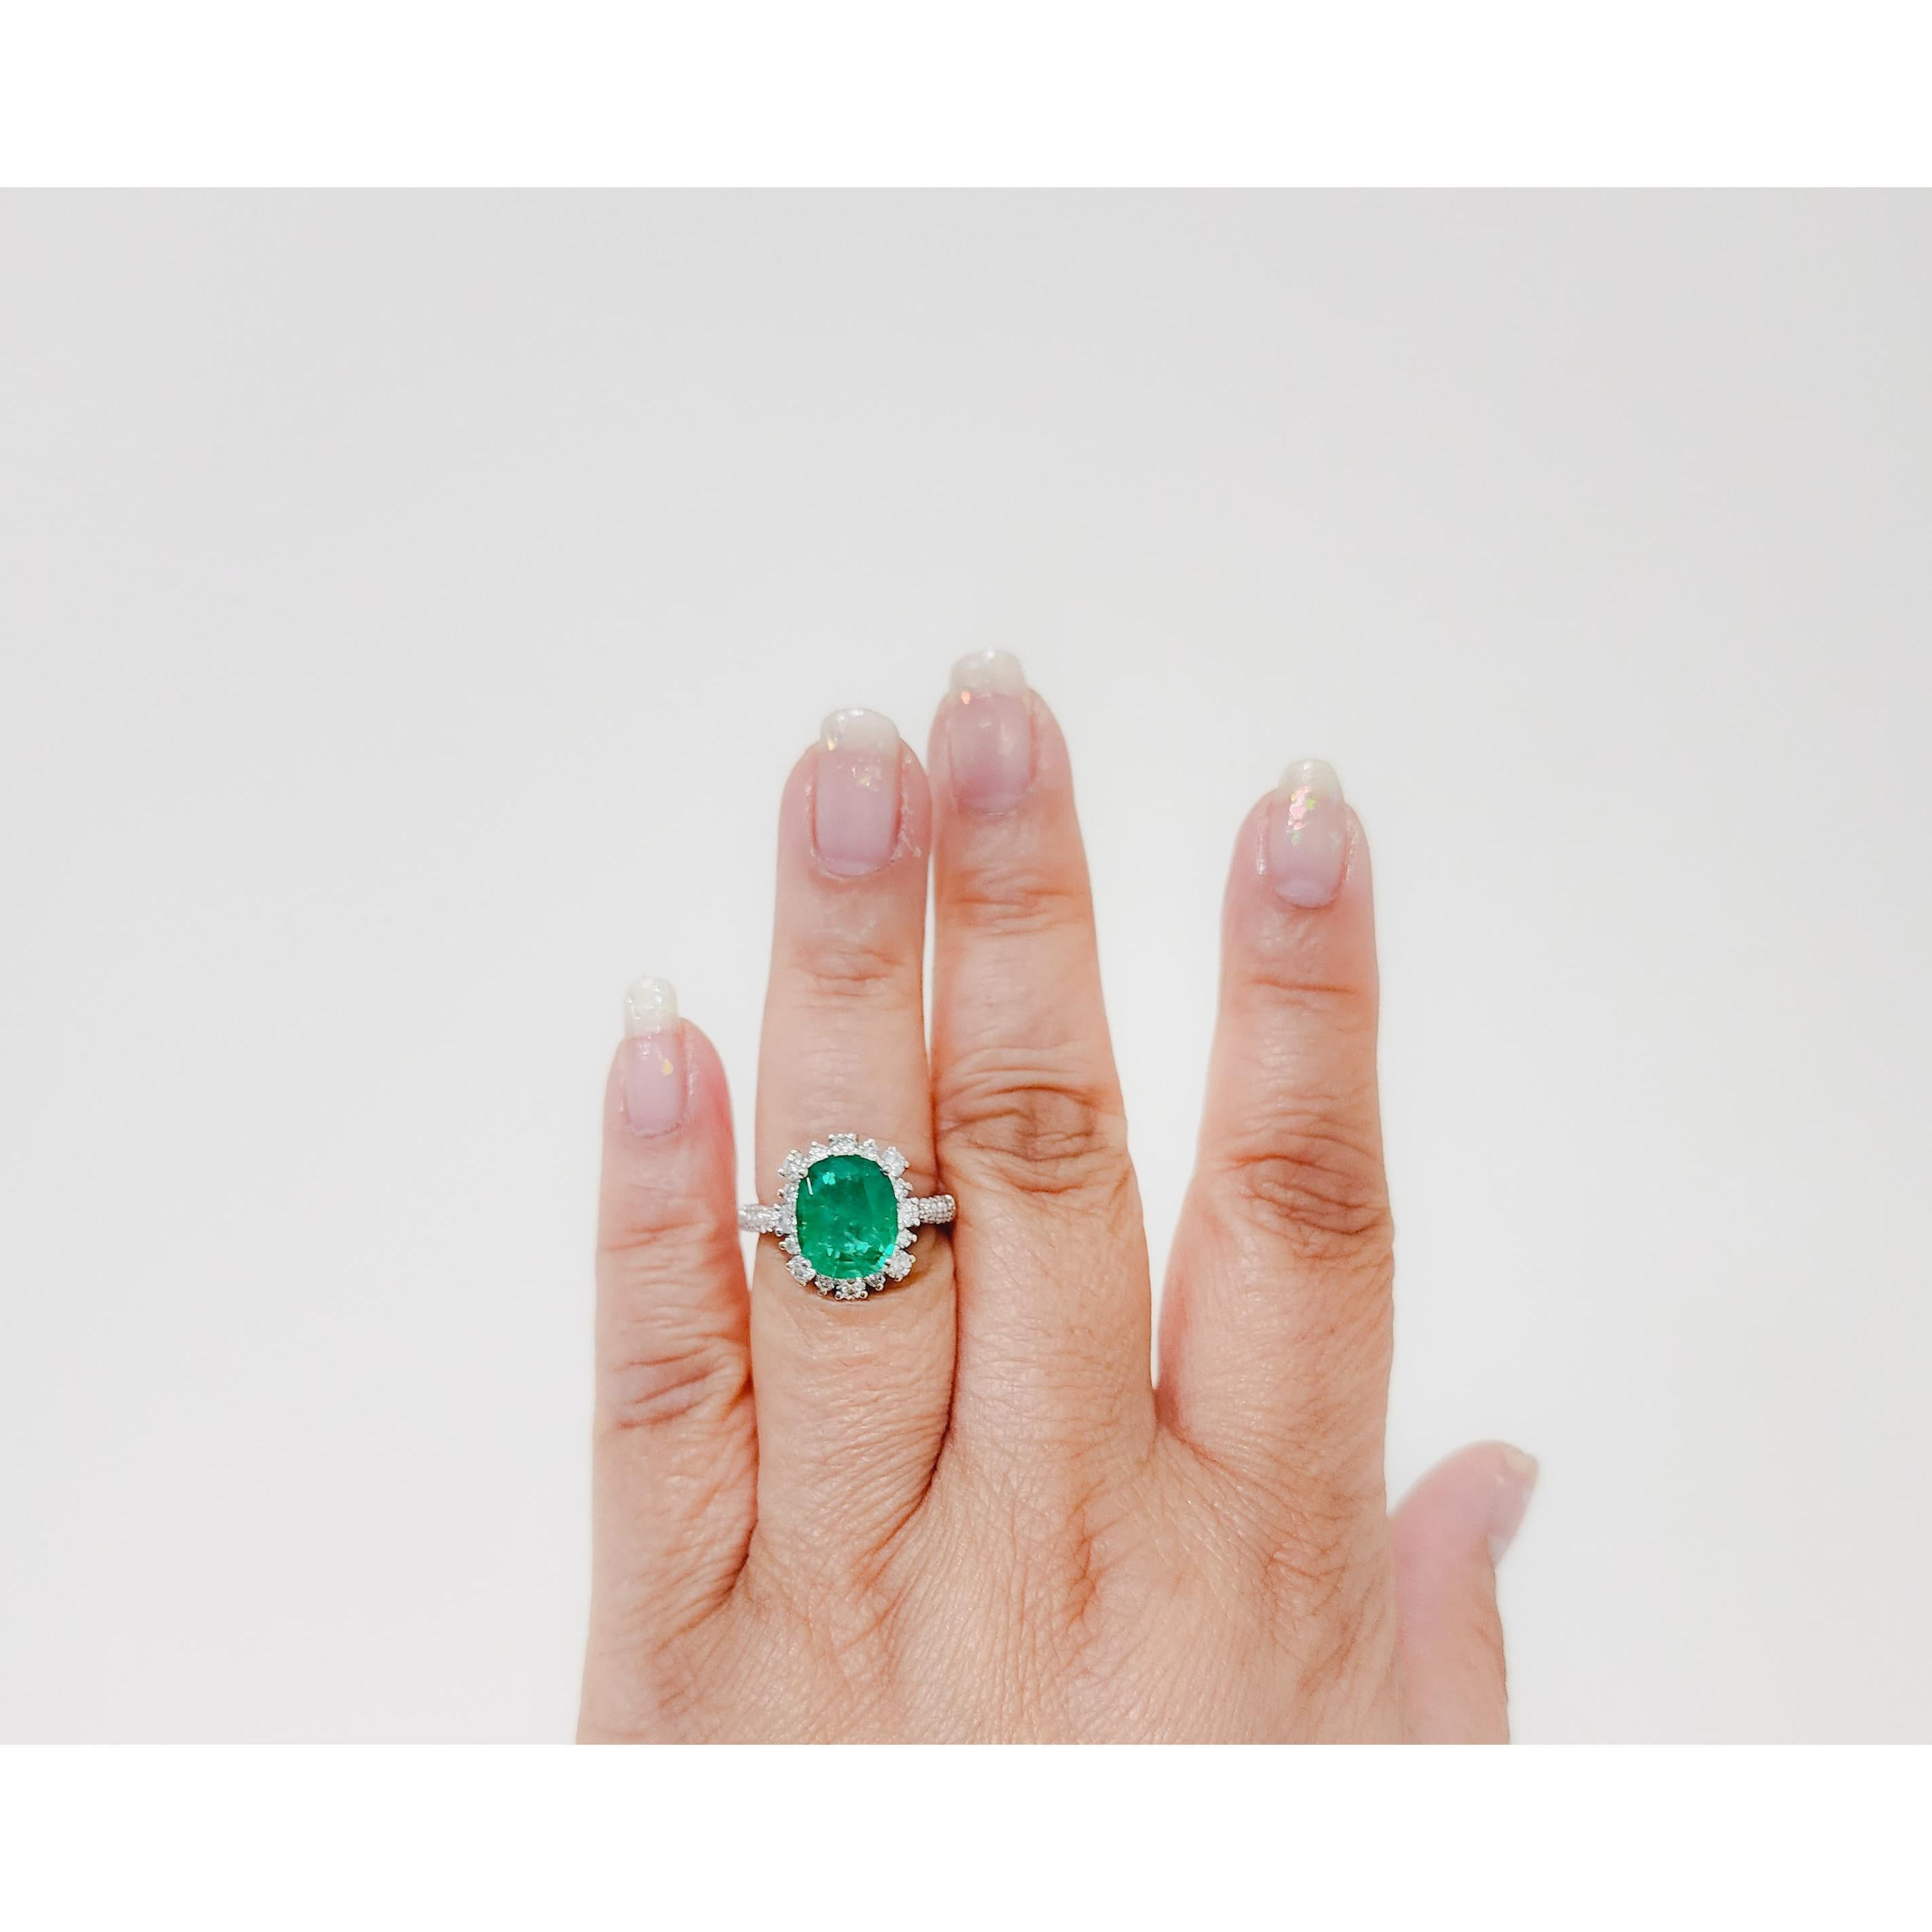 Wunderschöner ovaler 3.66-karätiger Smaragd mit runden weißen Diamanten von guter Qualität.  Handgefertigt aus 18k Weißgold.  Ringgröße 6,75.